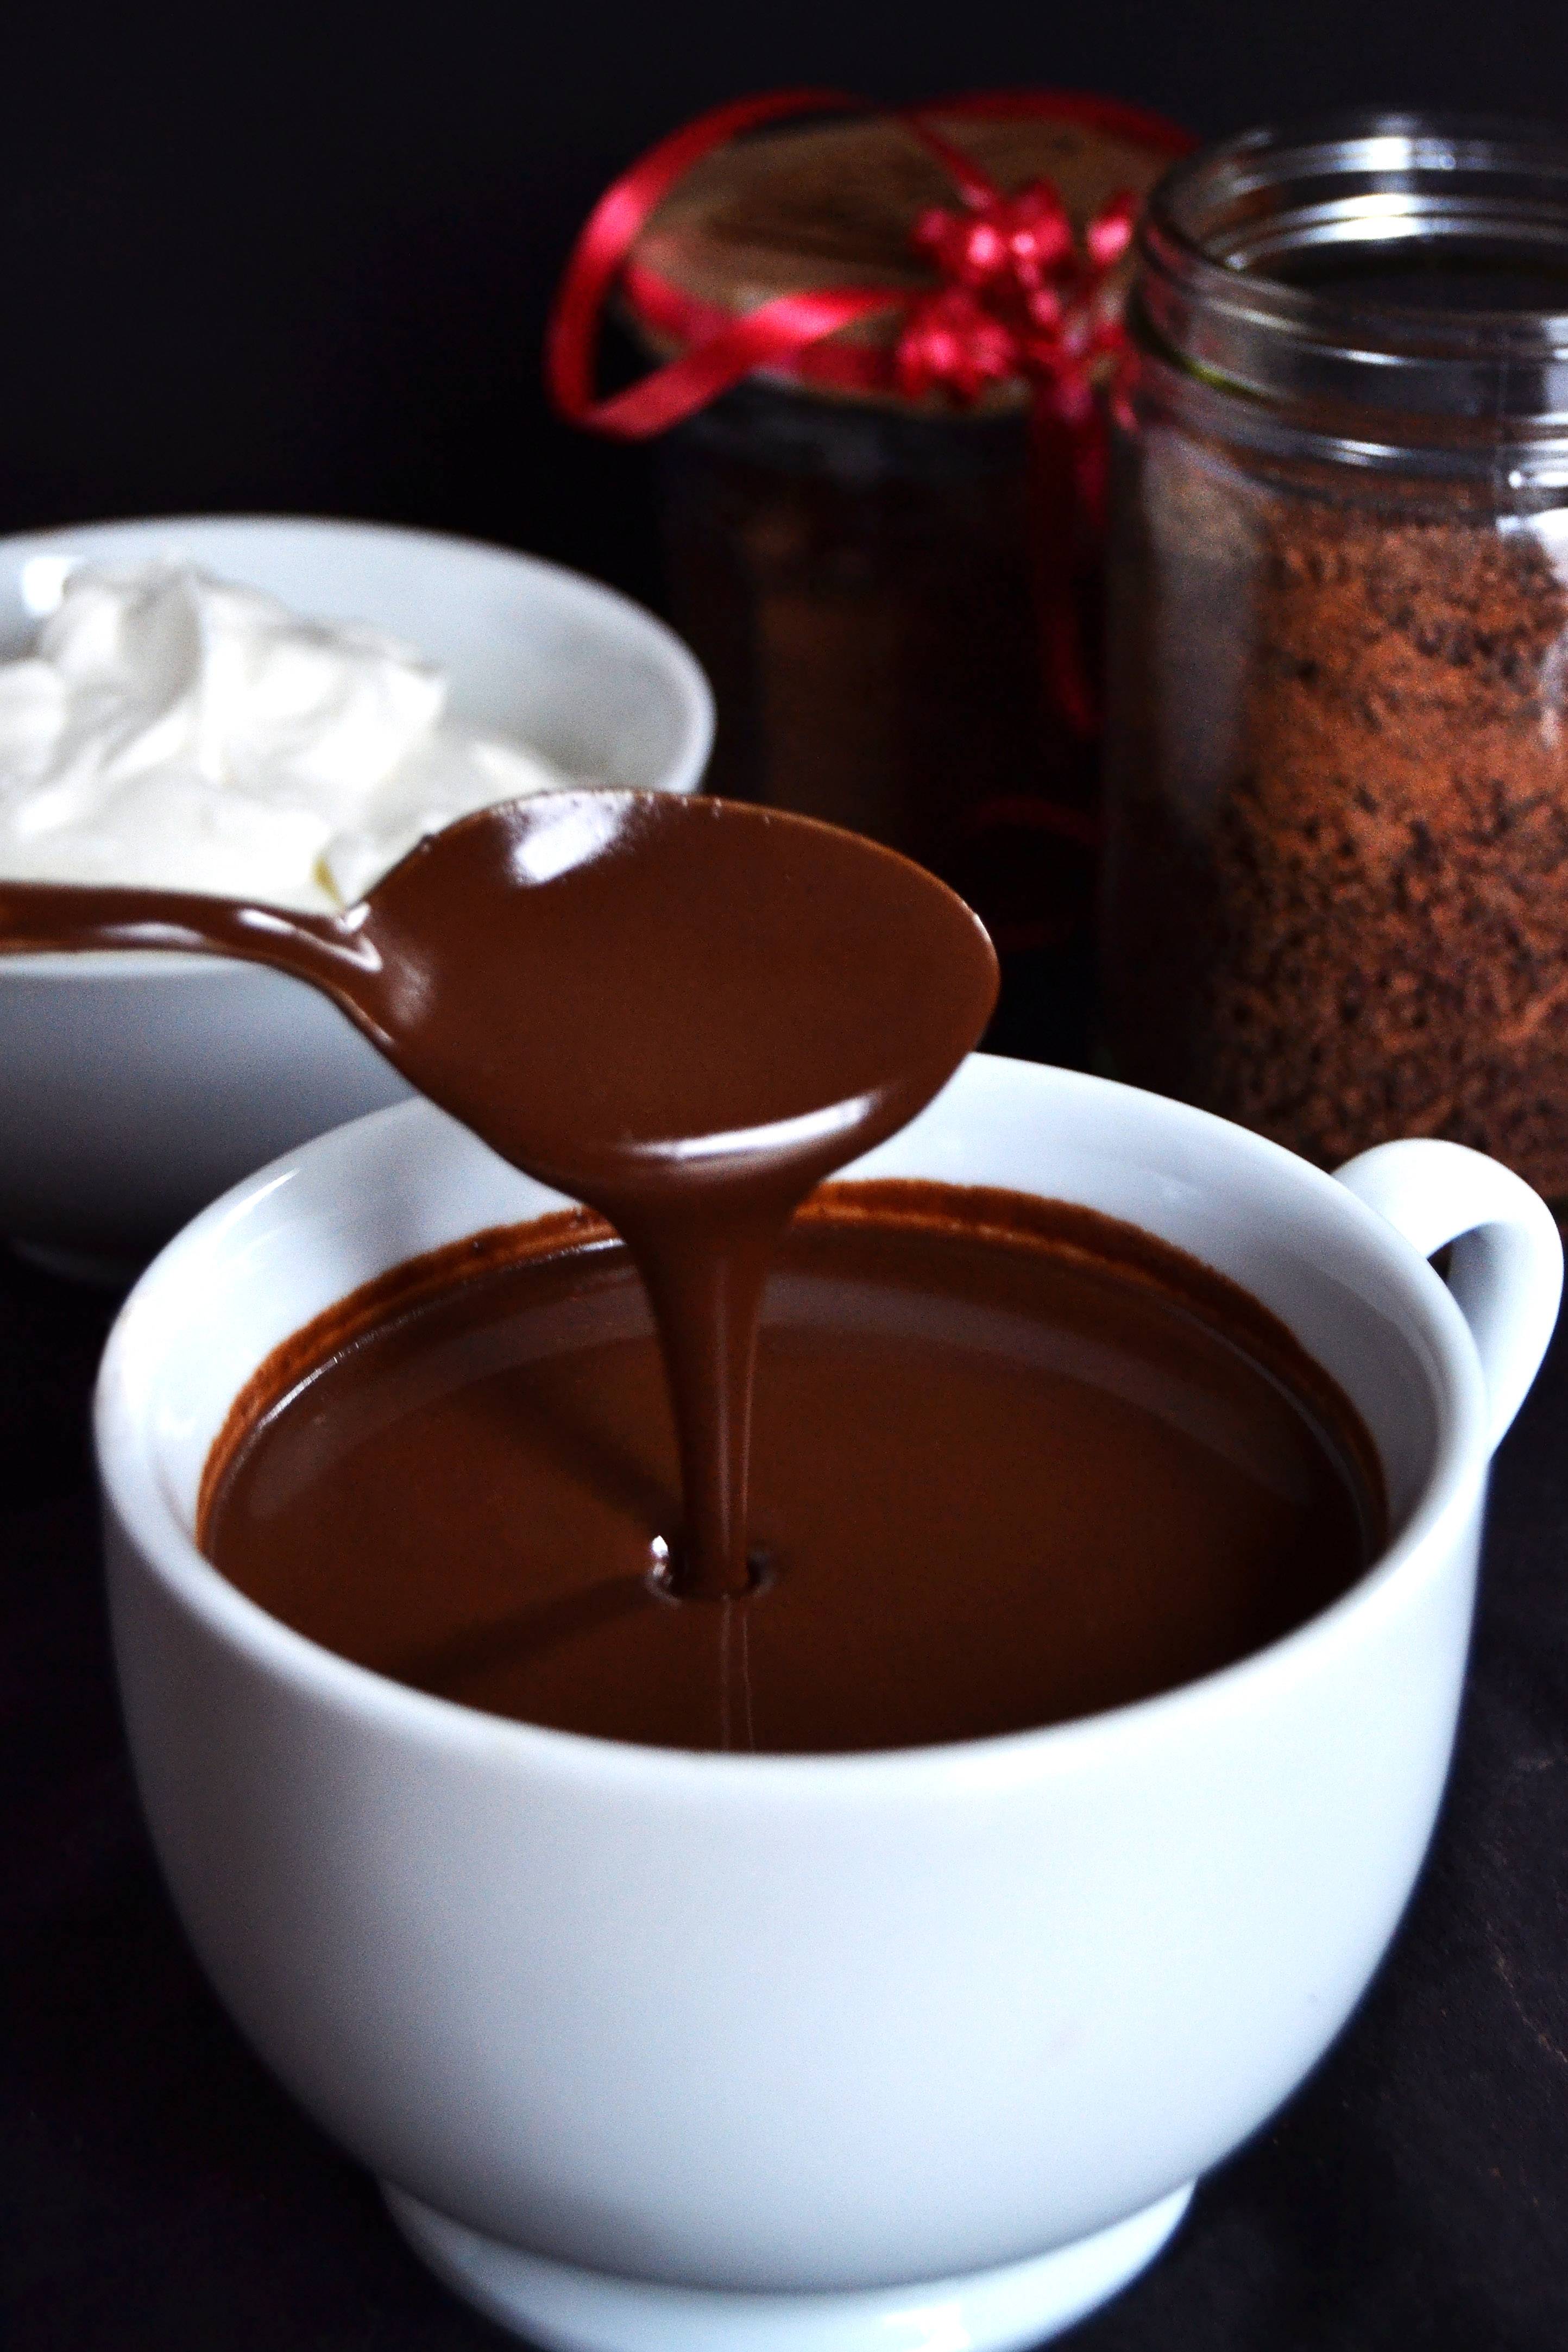 Рецепты кофе с шоколадом и шоколадным сиропом — рассмотрим по порядку